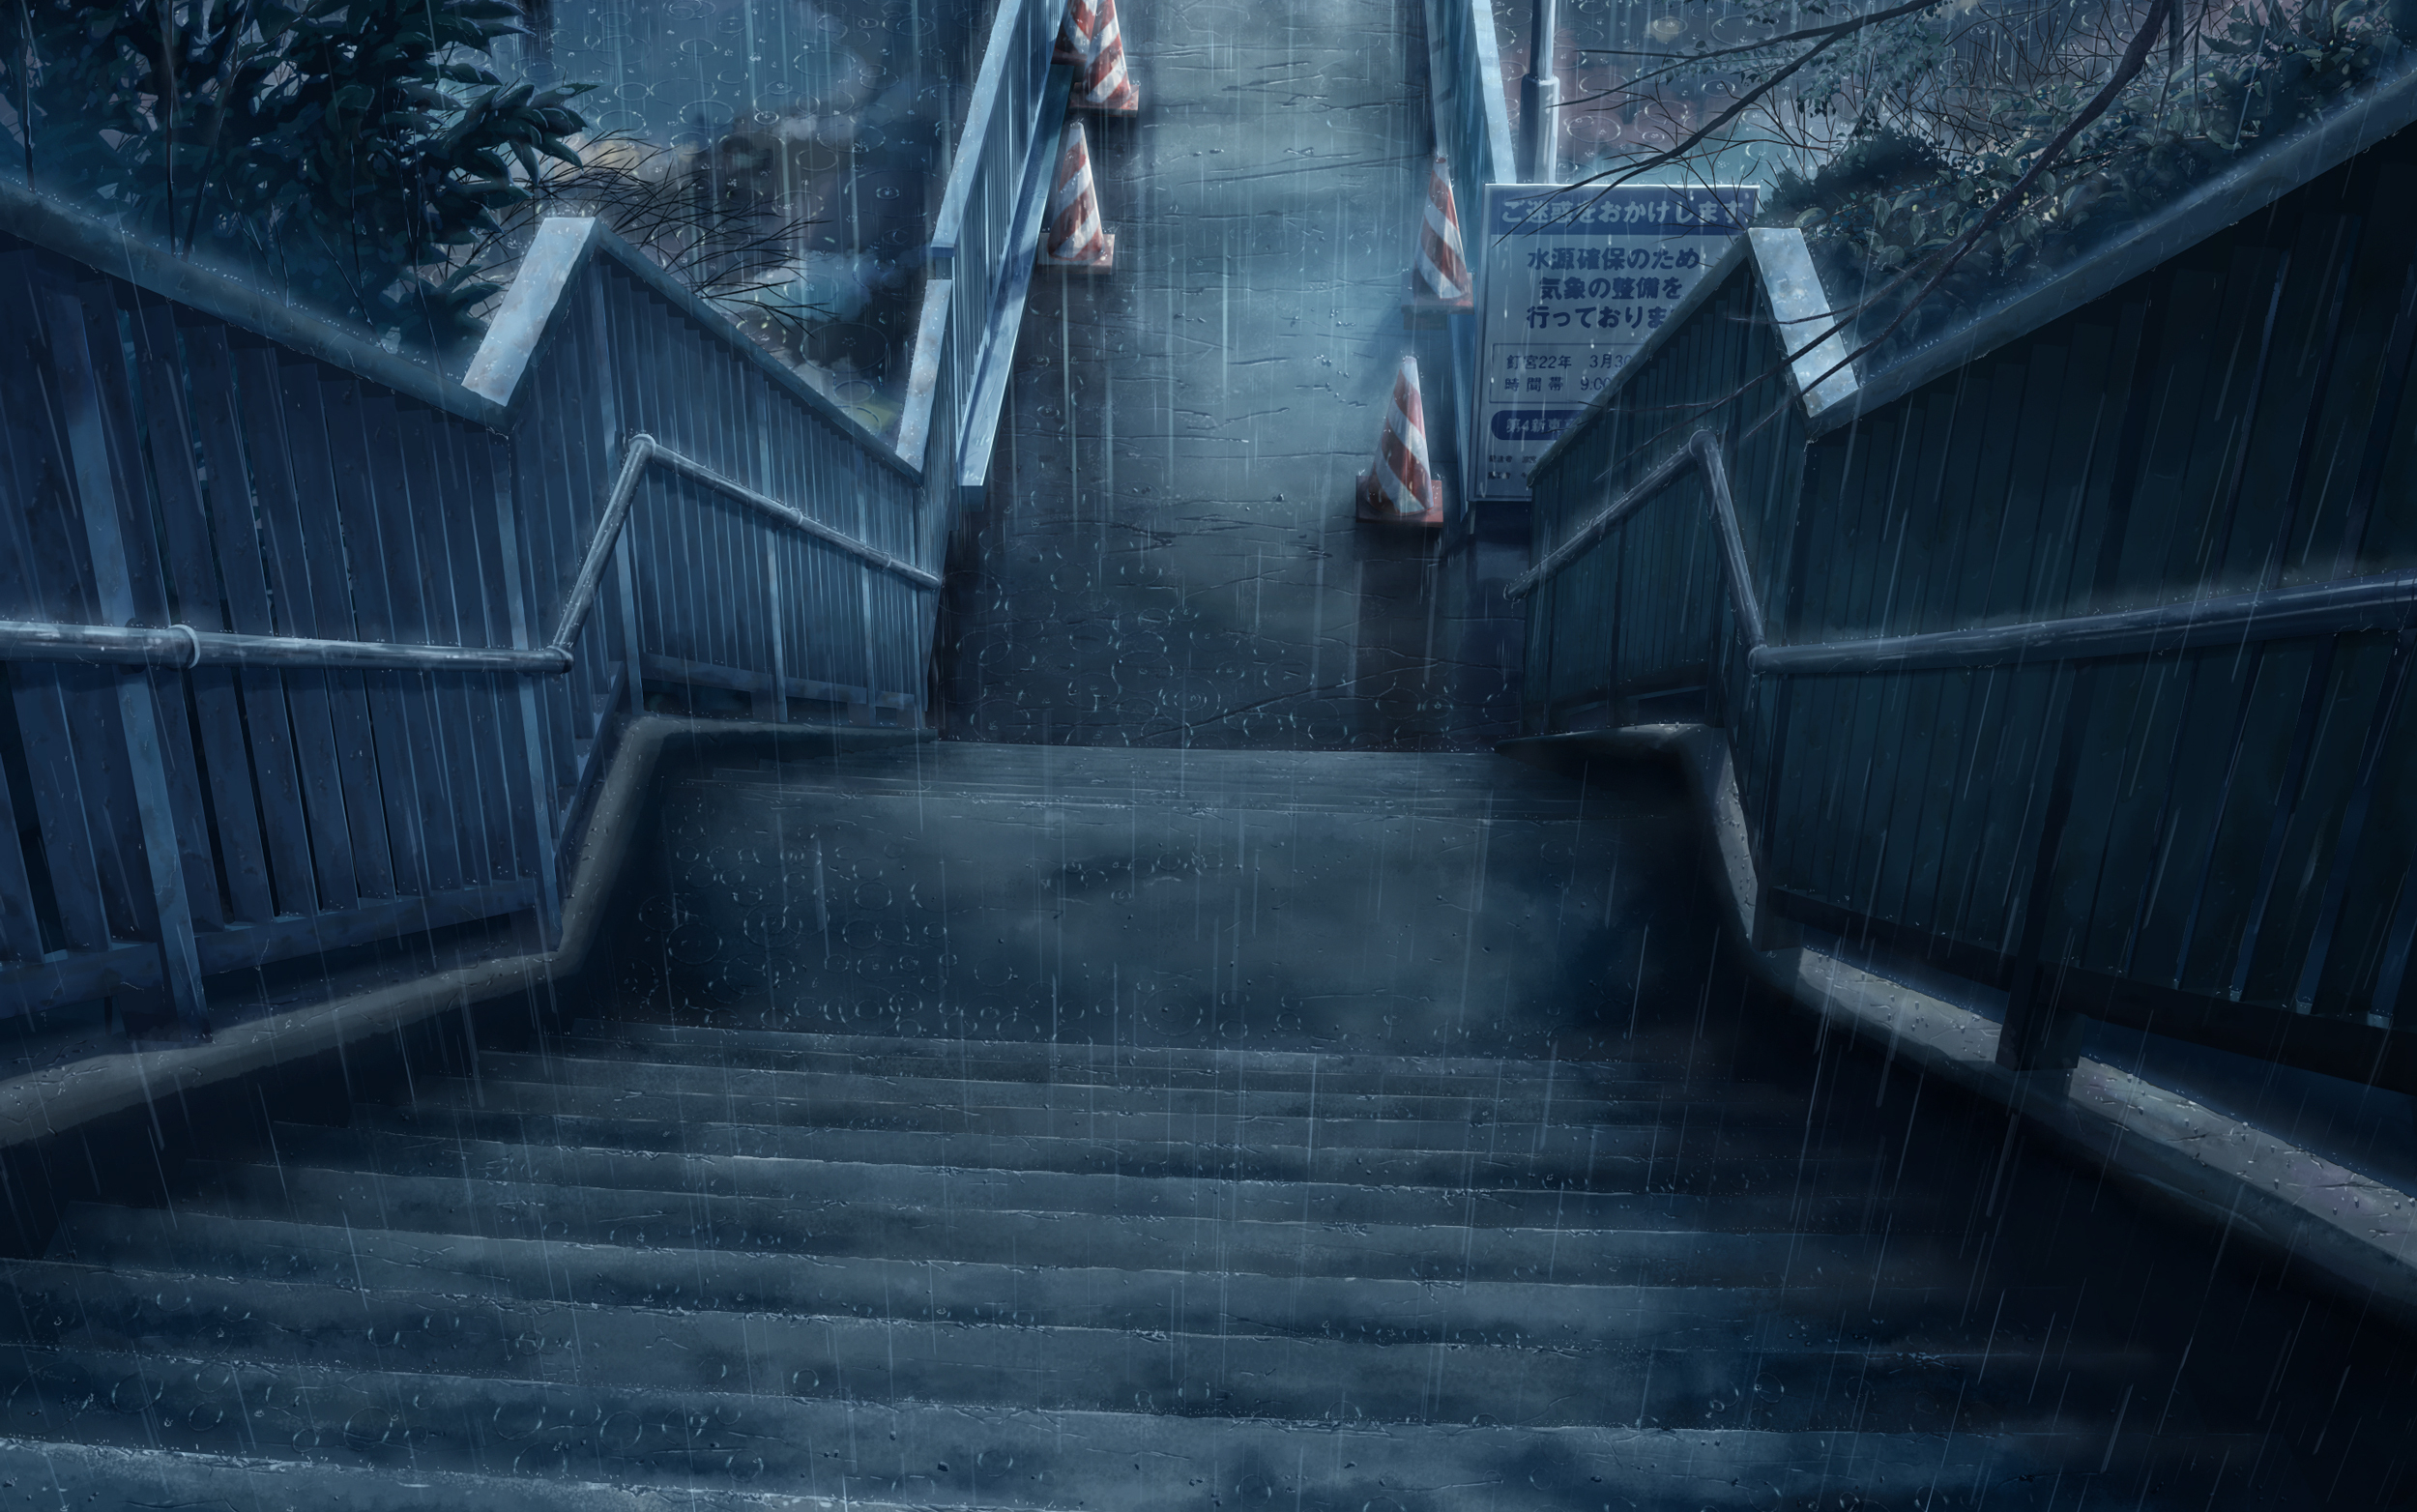 stairs, man made, rain